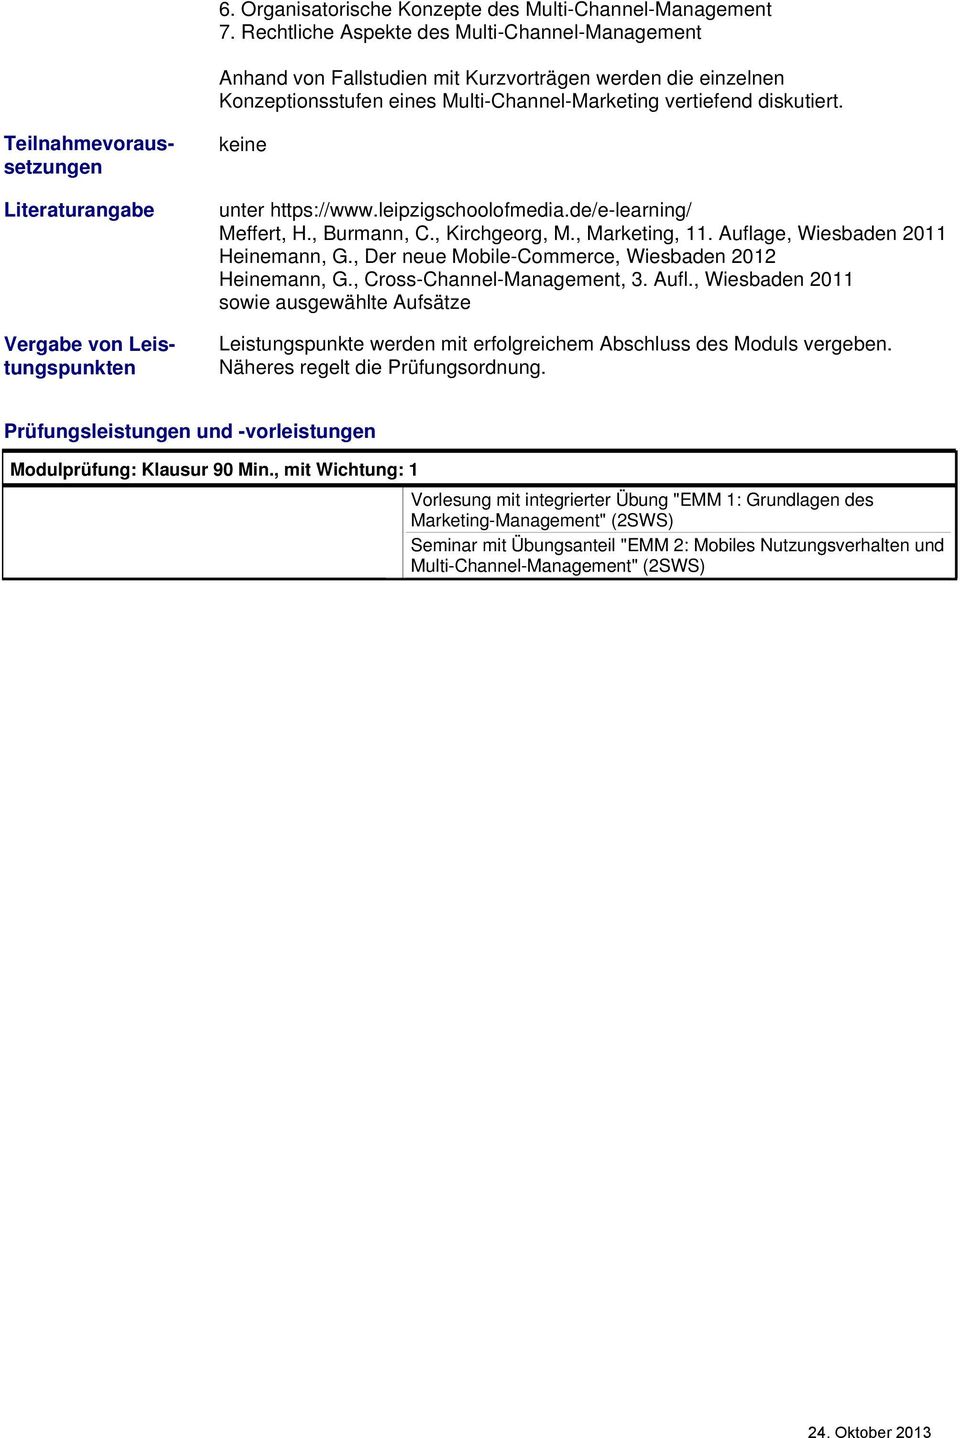 Teilnahmevoraussetzungen Literaturangabe Vergabe von Leistungspunkten Meffert, H., Burmann, C., Kirchgeorg, M., Marketing, 11. Auflage, Wiesbaden 2011 Heinemann, G.